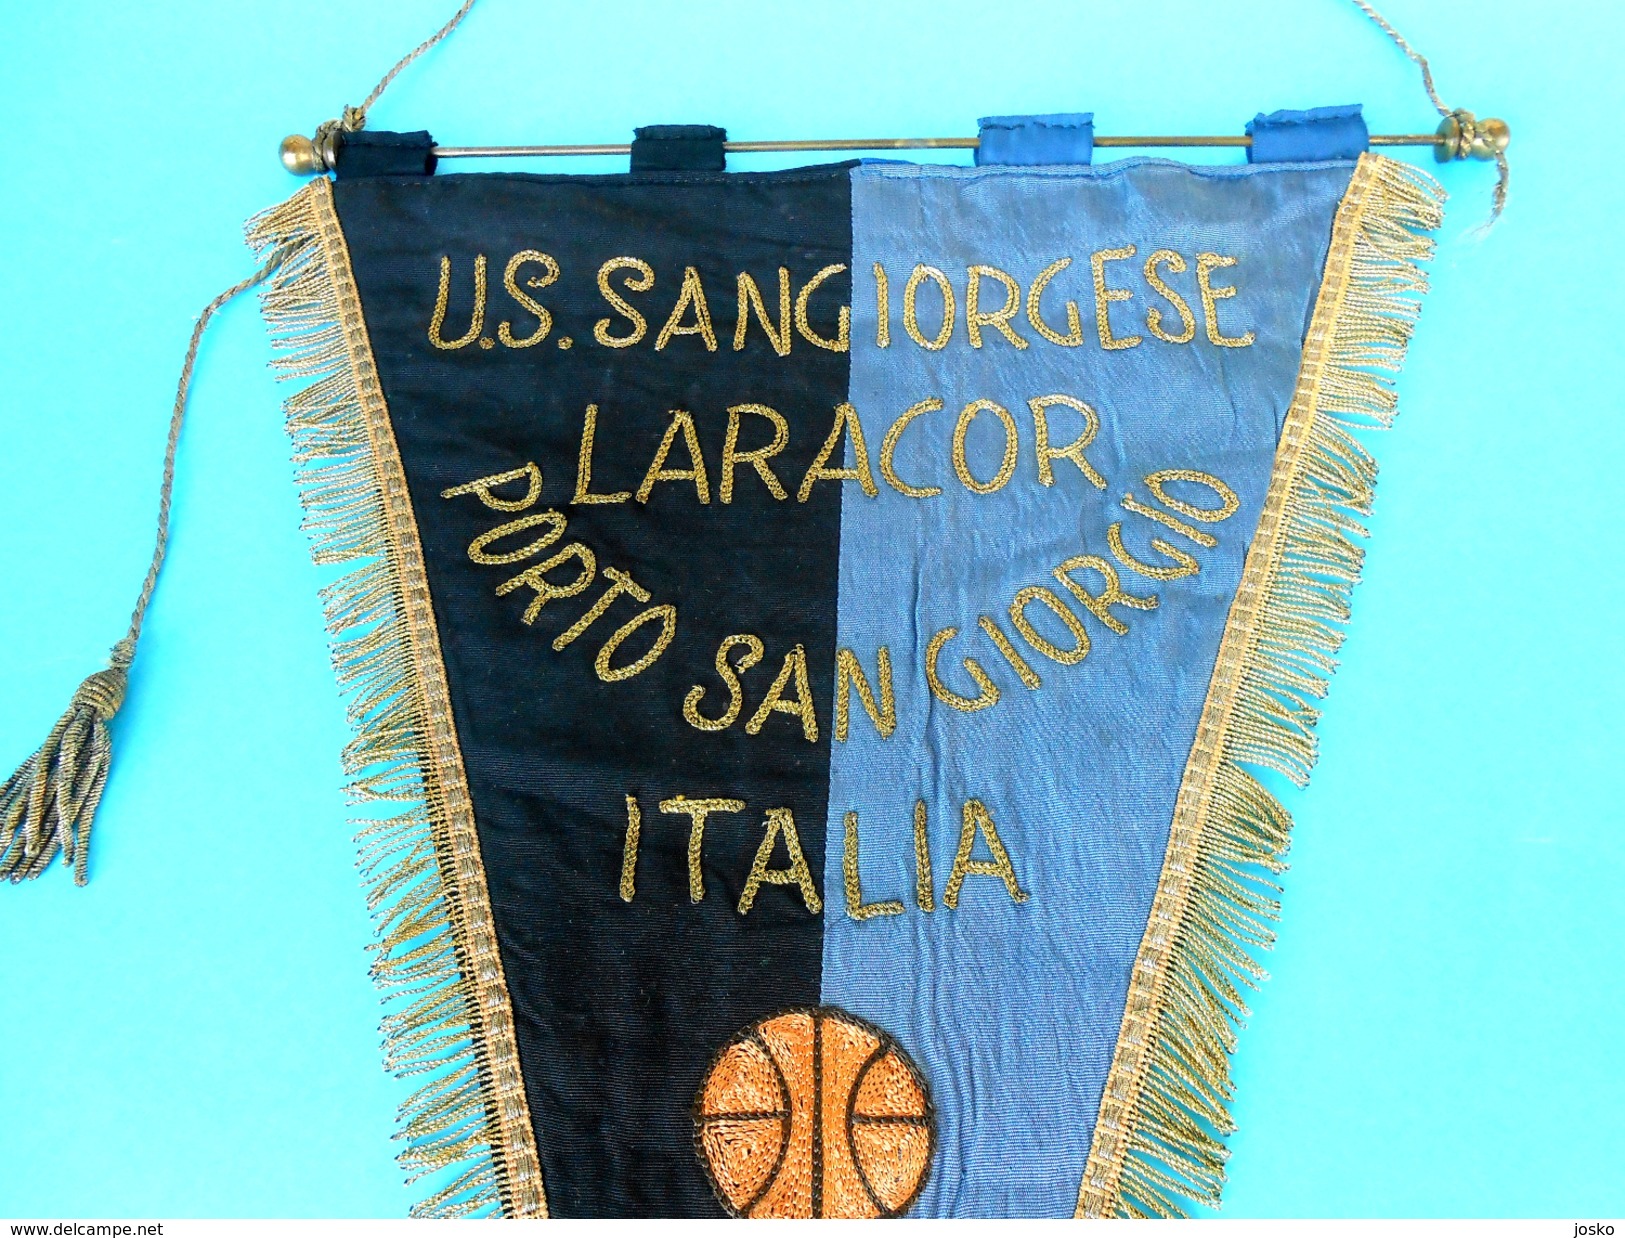 US SANGIORGESE PORTO SAN GIORGIO Marche - Italy Basketball Vintage Pennant Fanion Flag Bandierina Pallacanestro Italia - Uniformes, Recordatorios & Misc